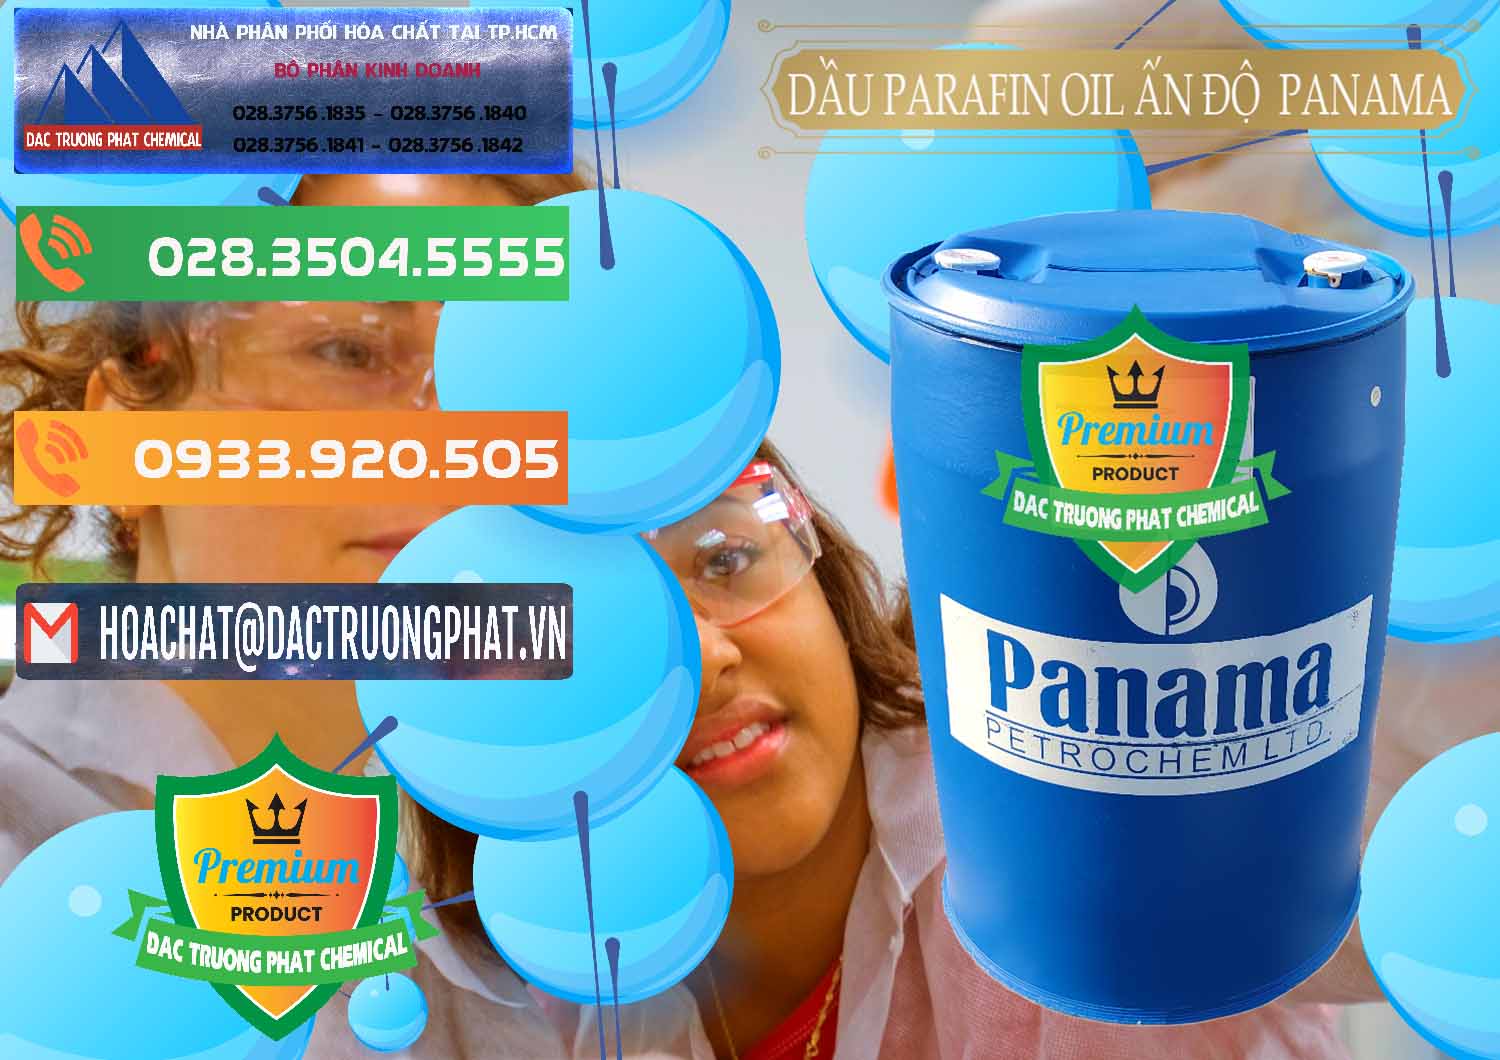 Đơn vị chuyên bán - cung cấp Dầu Parafin Oil Panama Ấn Độ India - 0061 - Nơi bán & cung cấp hóa chất tại TP.HCM - hoachatxulynuoc.com.vn